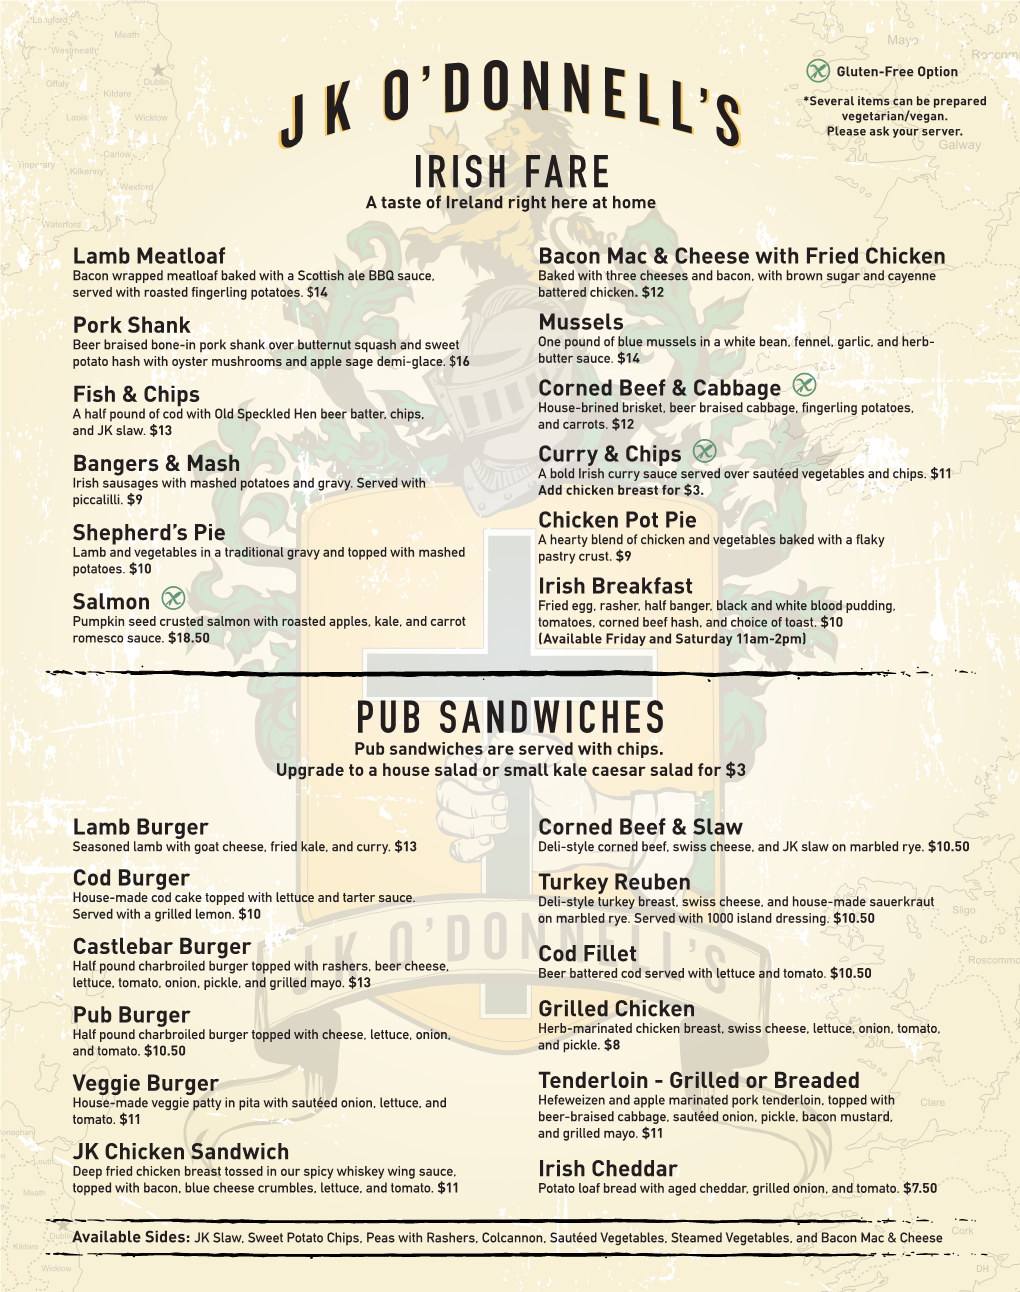 Irish Fare Pub Sandwiches